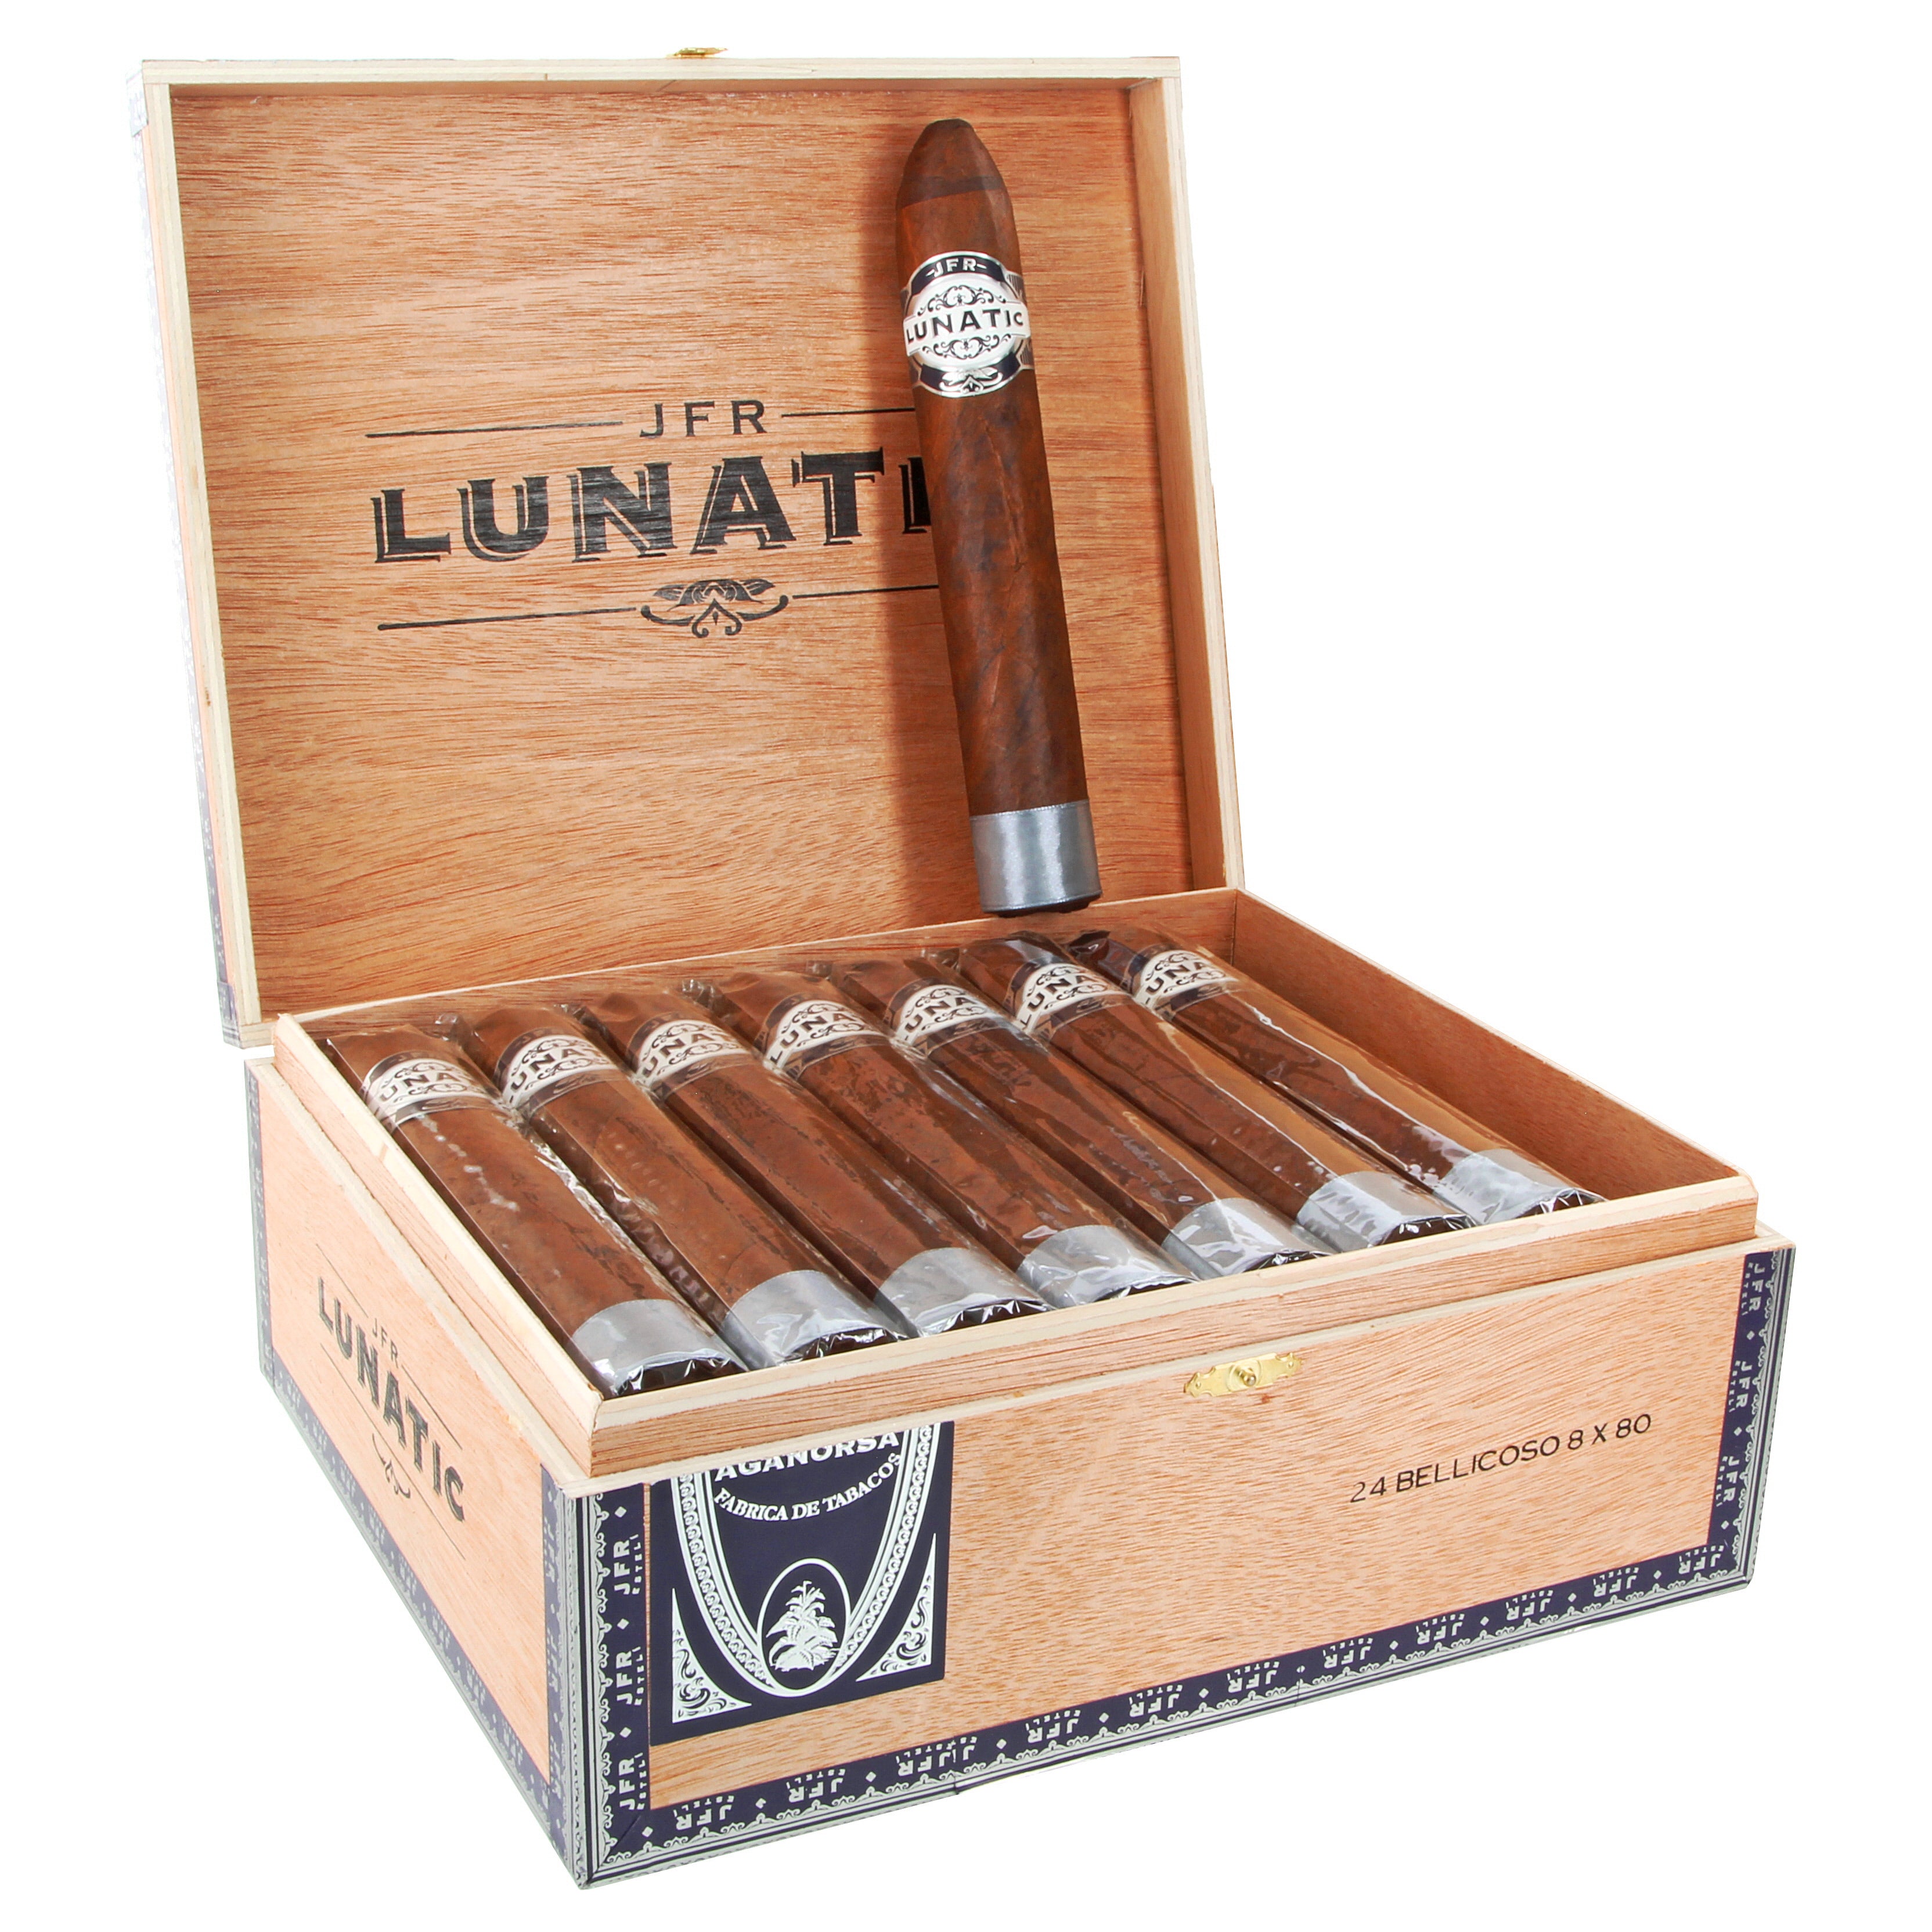 AGANORSA LEAF JFR Lunatic Cigars